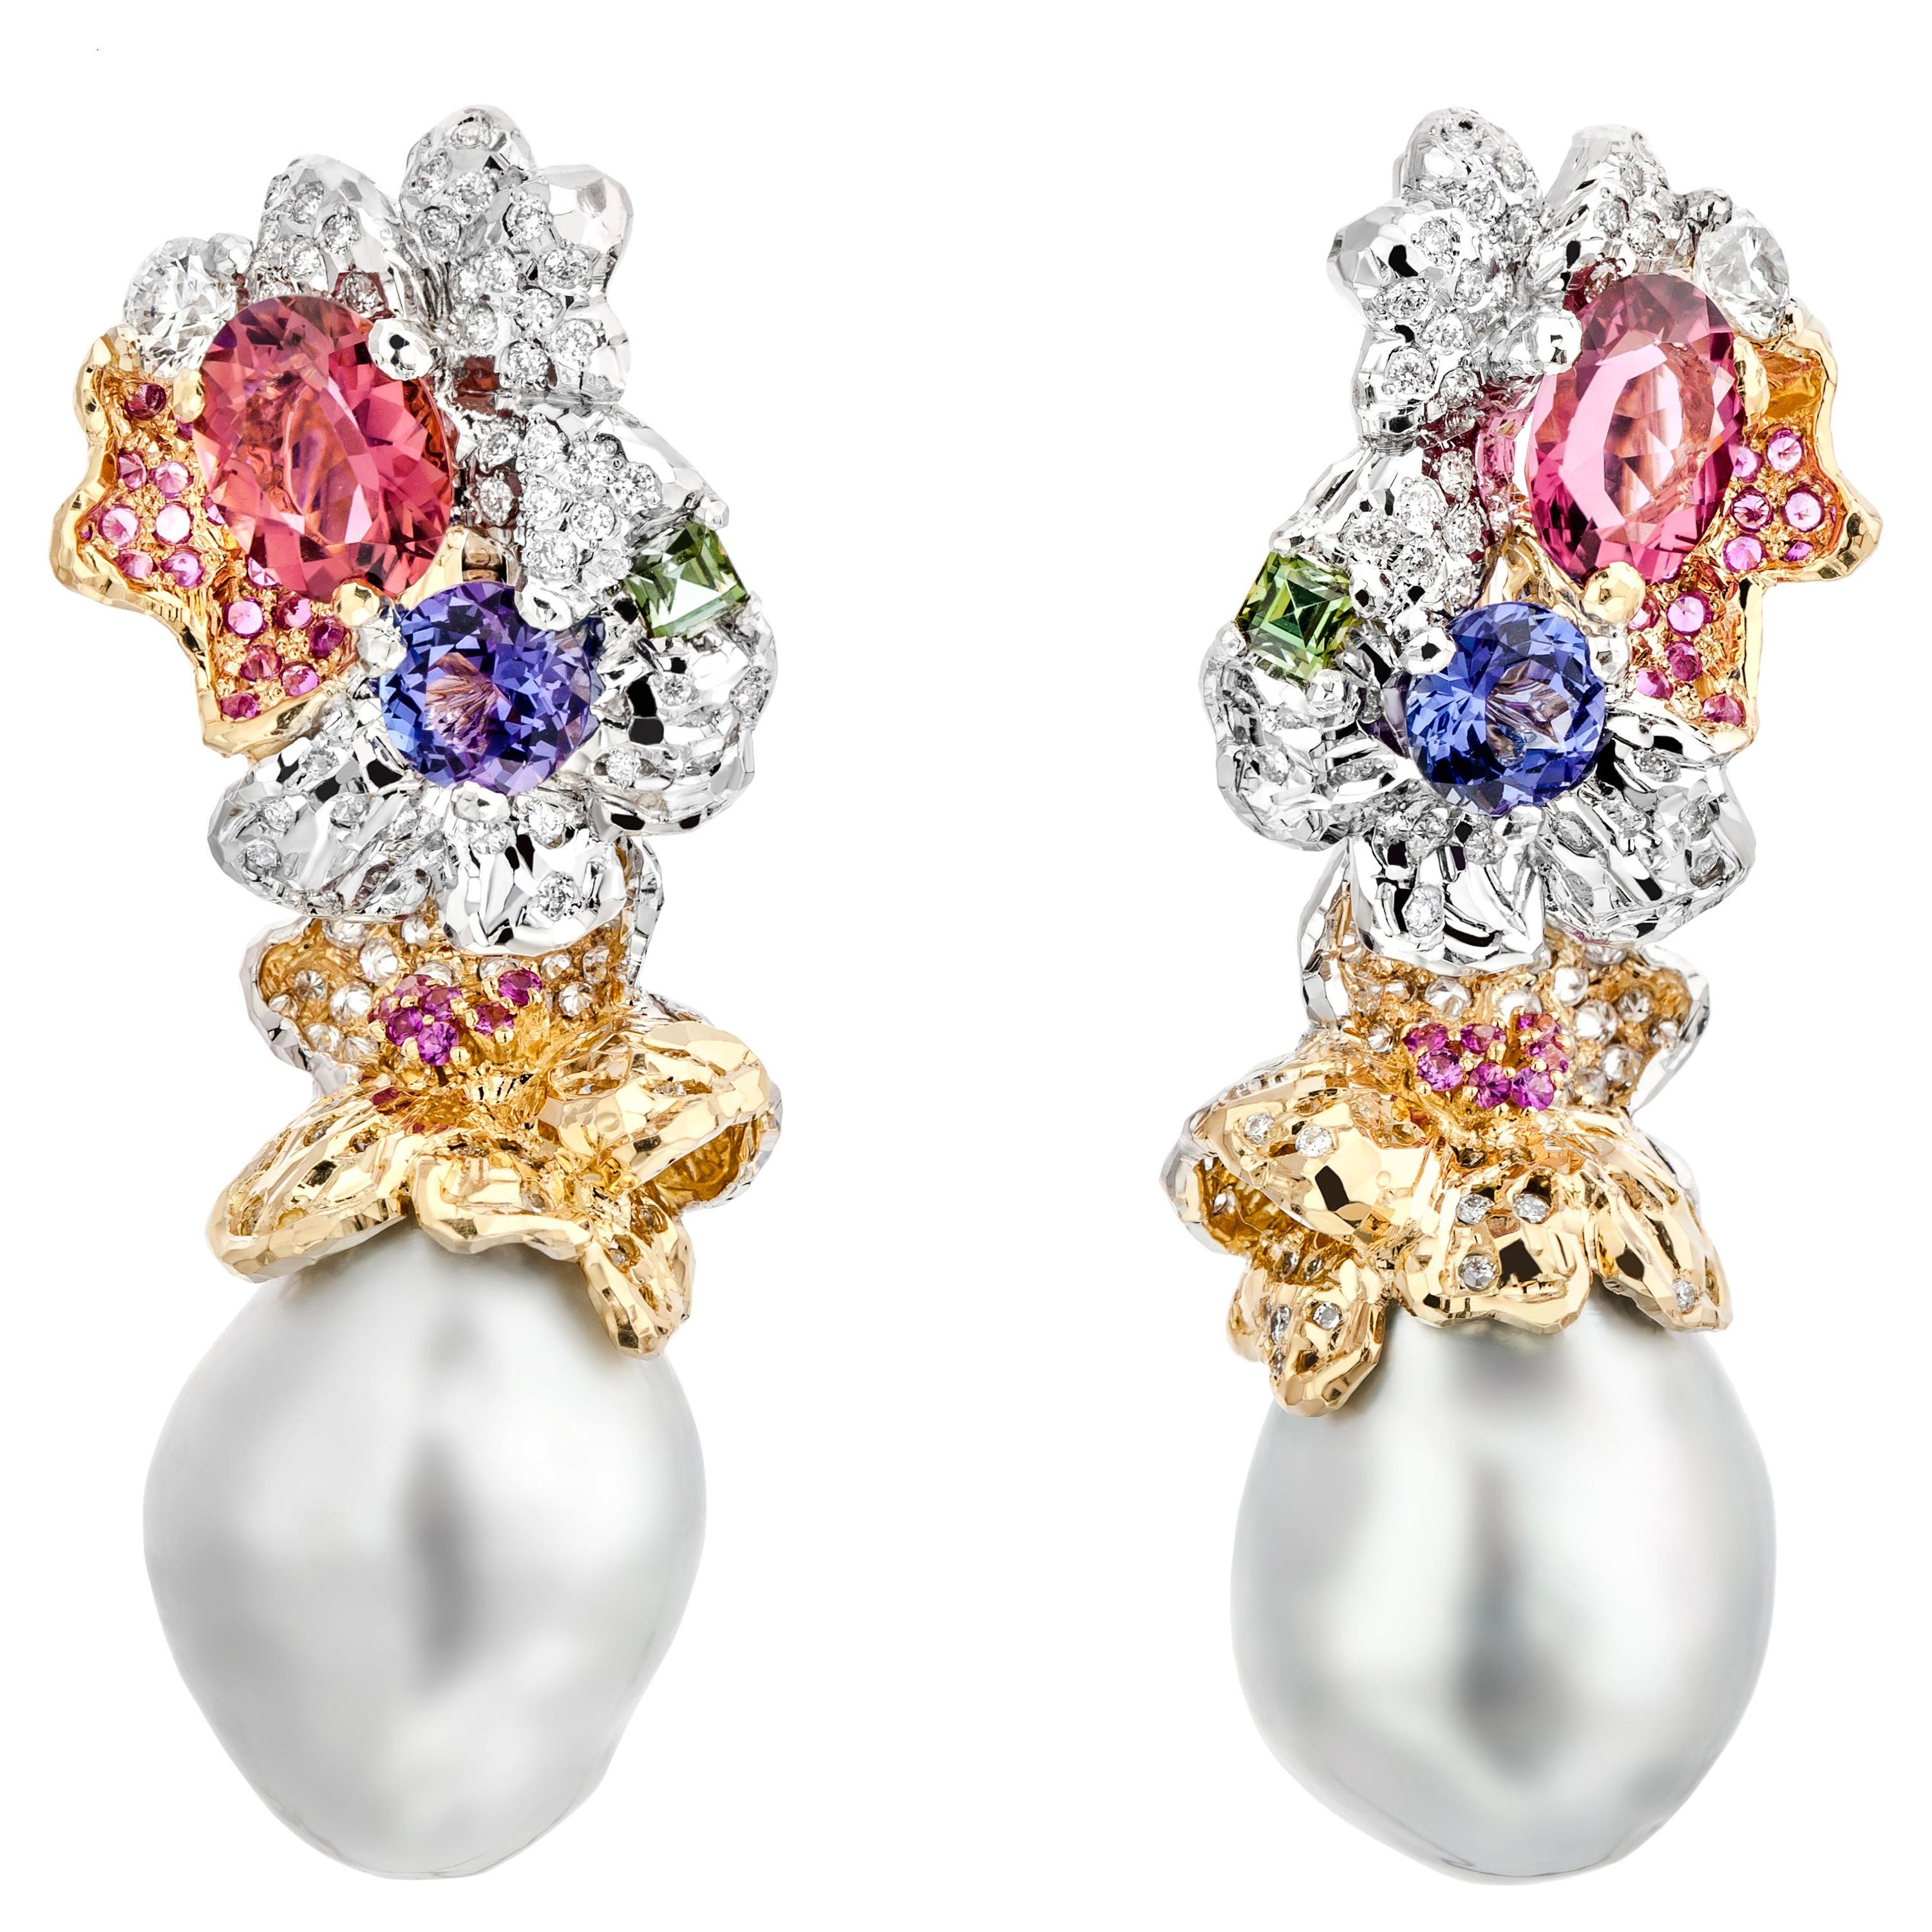 Ohrringe aus 18 Karat Gold mit Diamanten und Perlen, handgefertigt